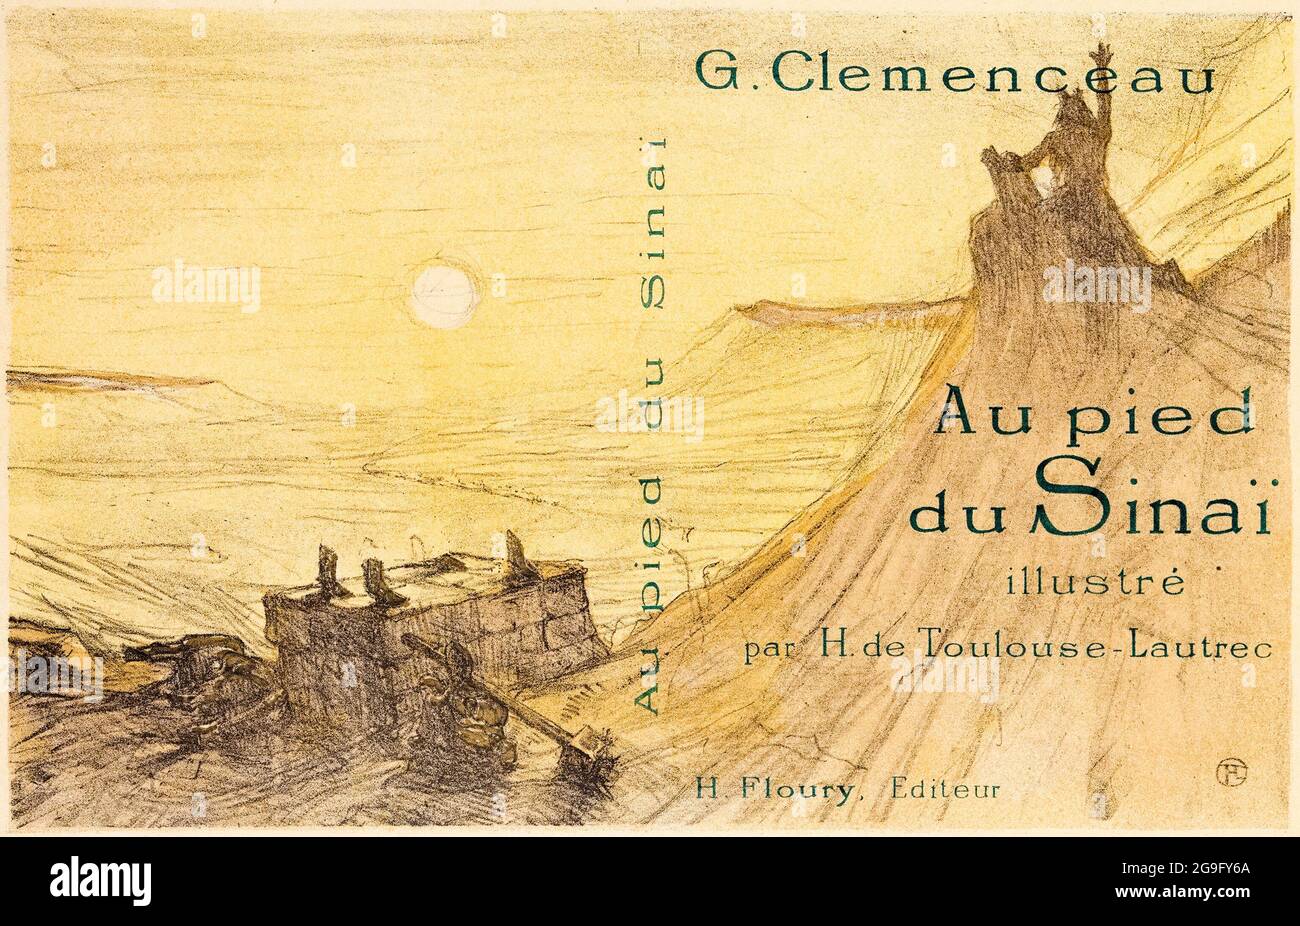 Henri de Toulouse-Lautrec, couverture de livre, pour, au pied du Sinaï, par, G.Clemenceau, imprimé, 1897 Banque D'Images